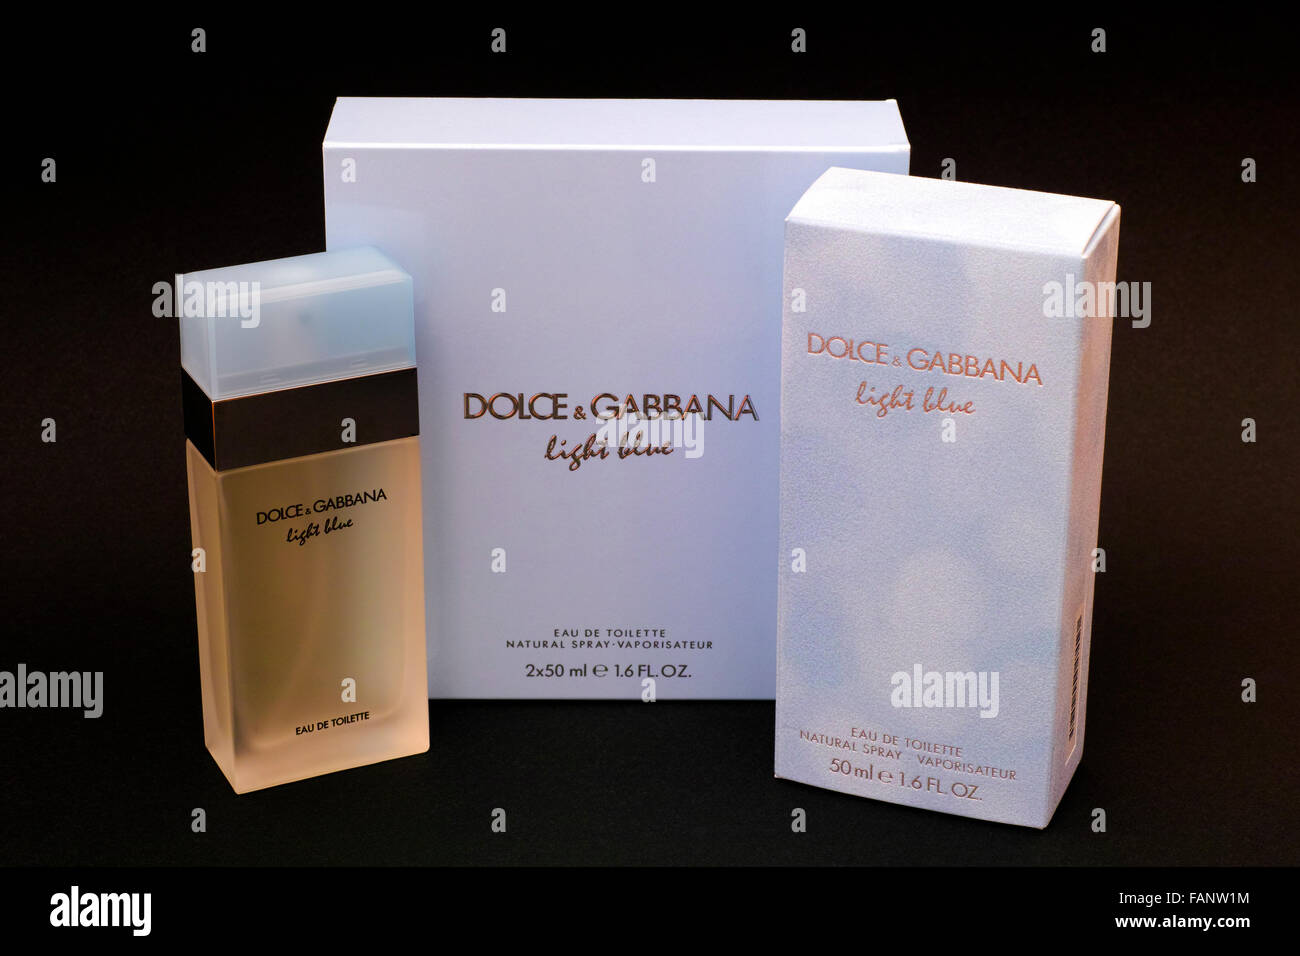 Dolce & Gabbana Light Blue weiblichen Duft. Hellblau ist ein leichter blumiger Duft in einer samt powder blue Box. Stockfoto